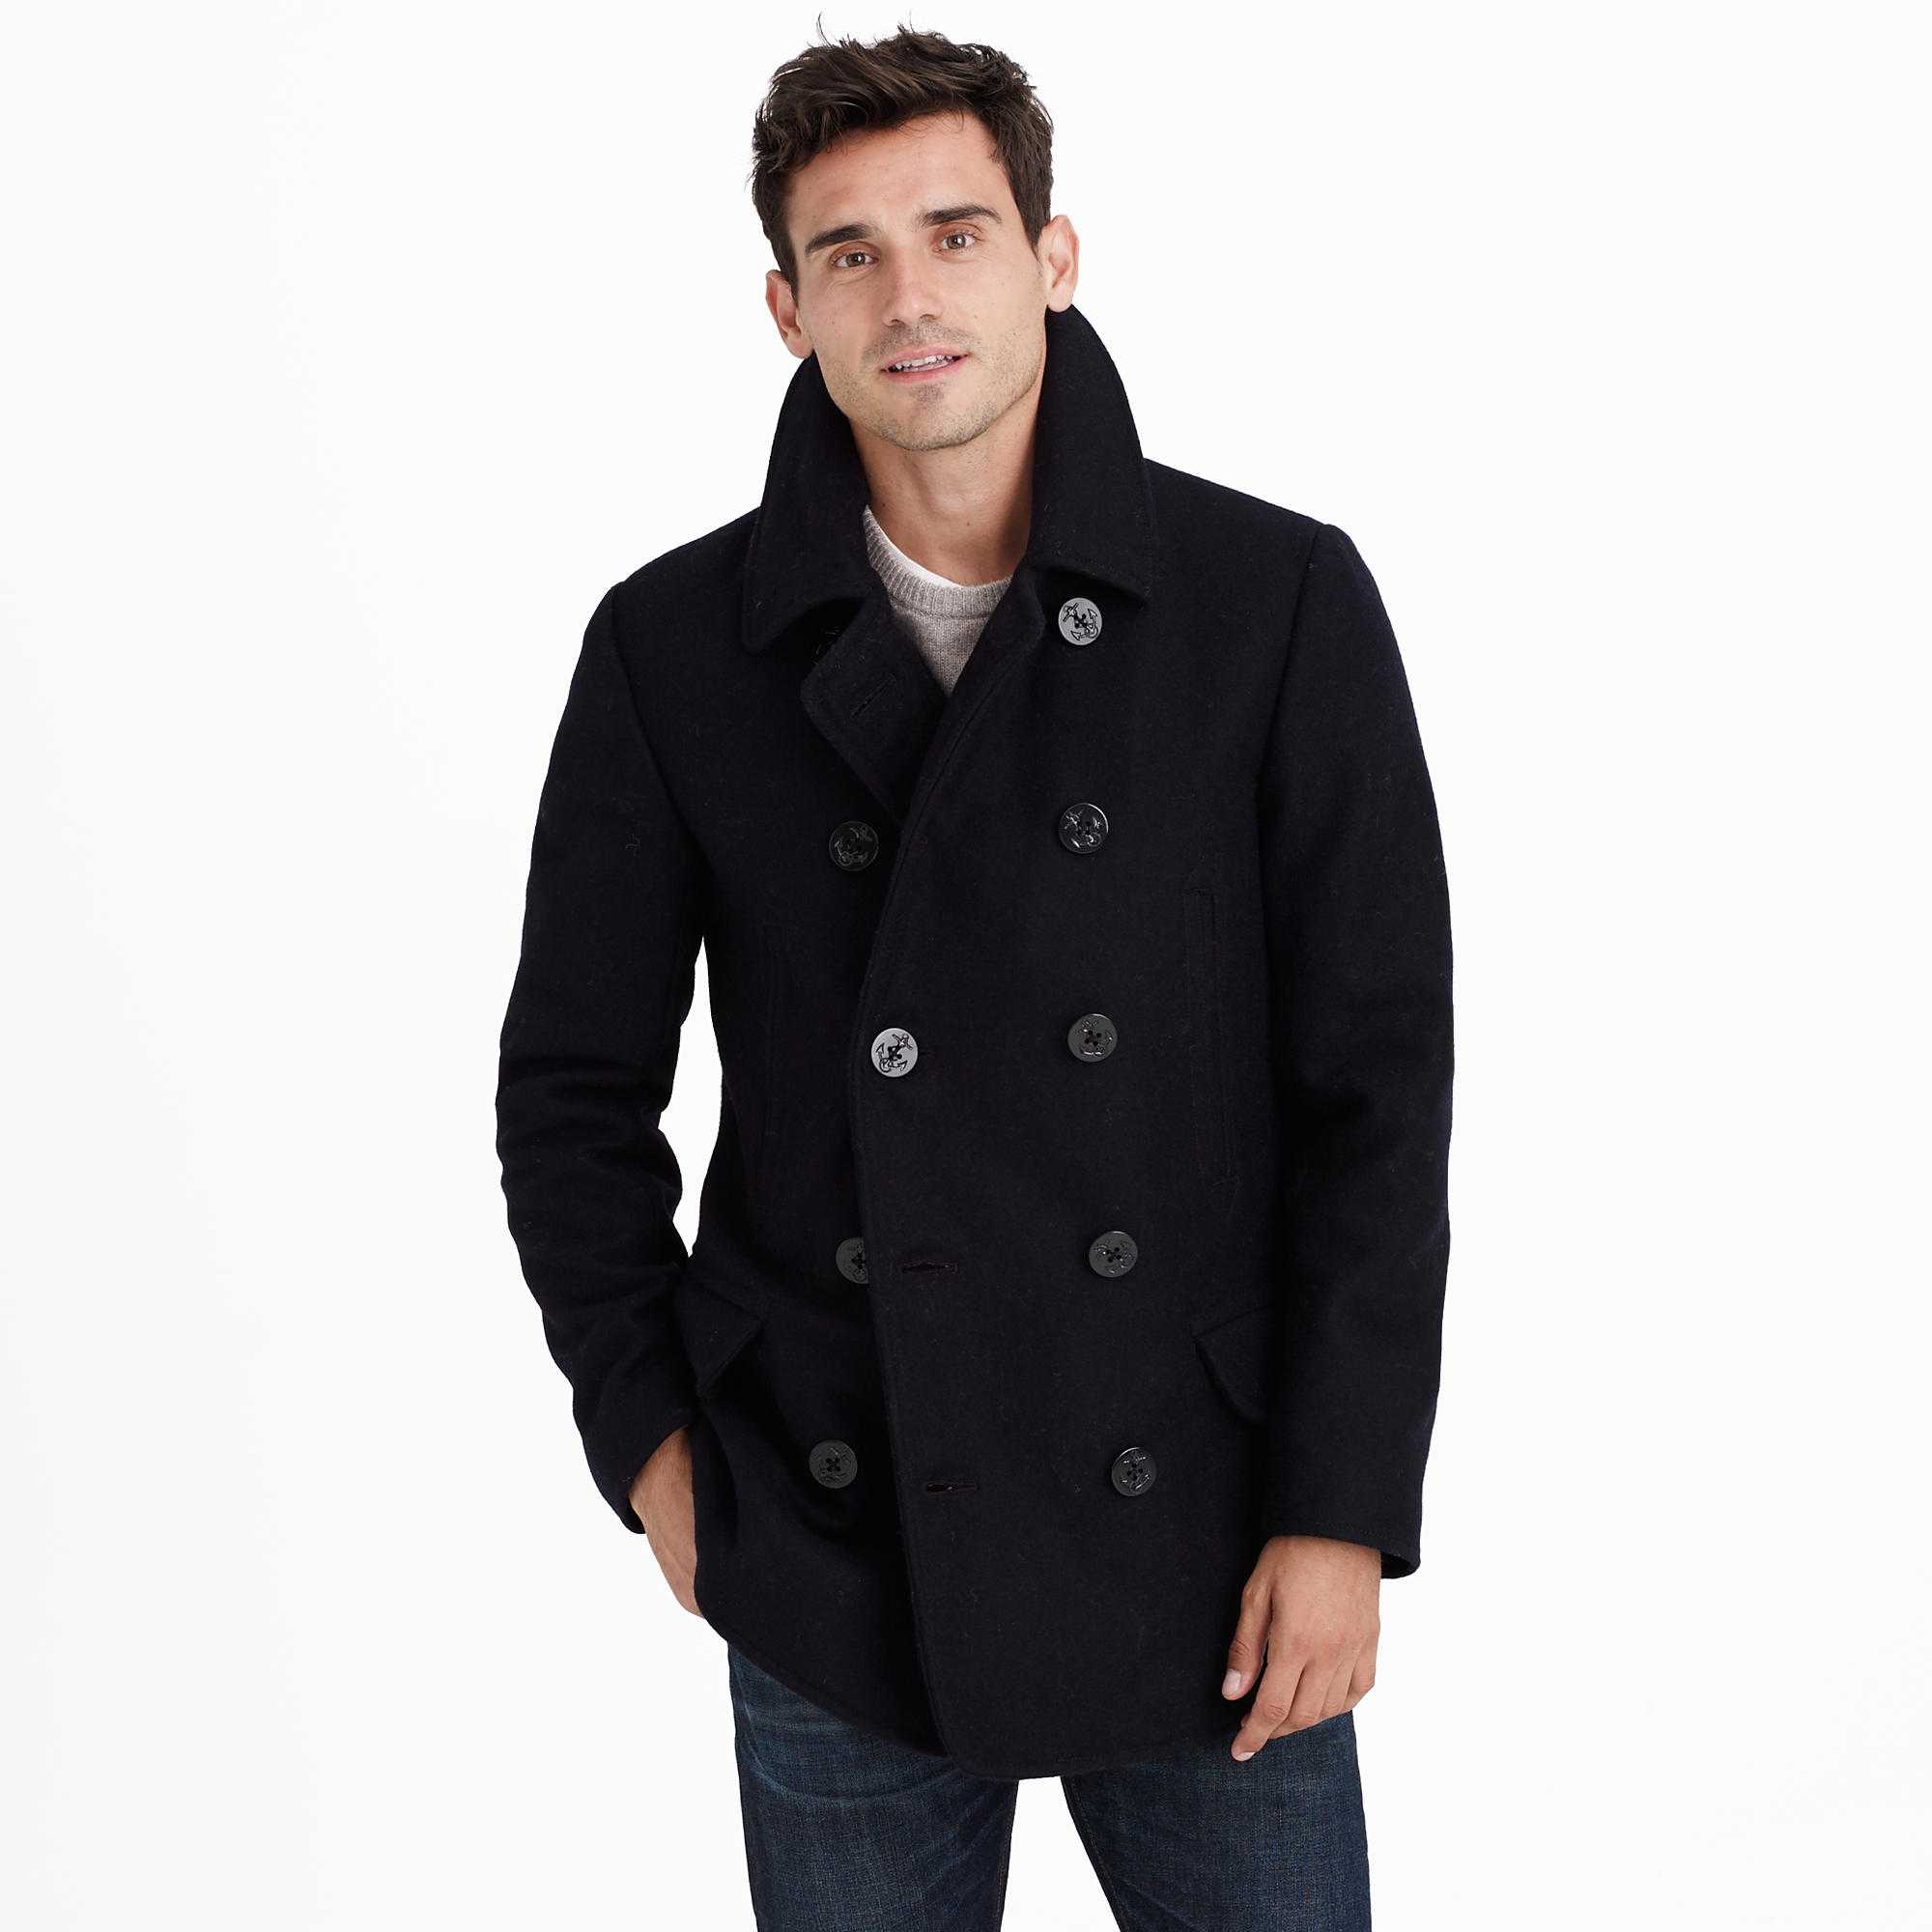 С чем носить мужское пальто? как подобрать демисезонную и зимнюю модель?